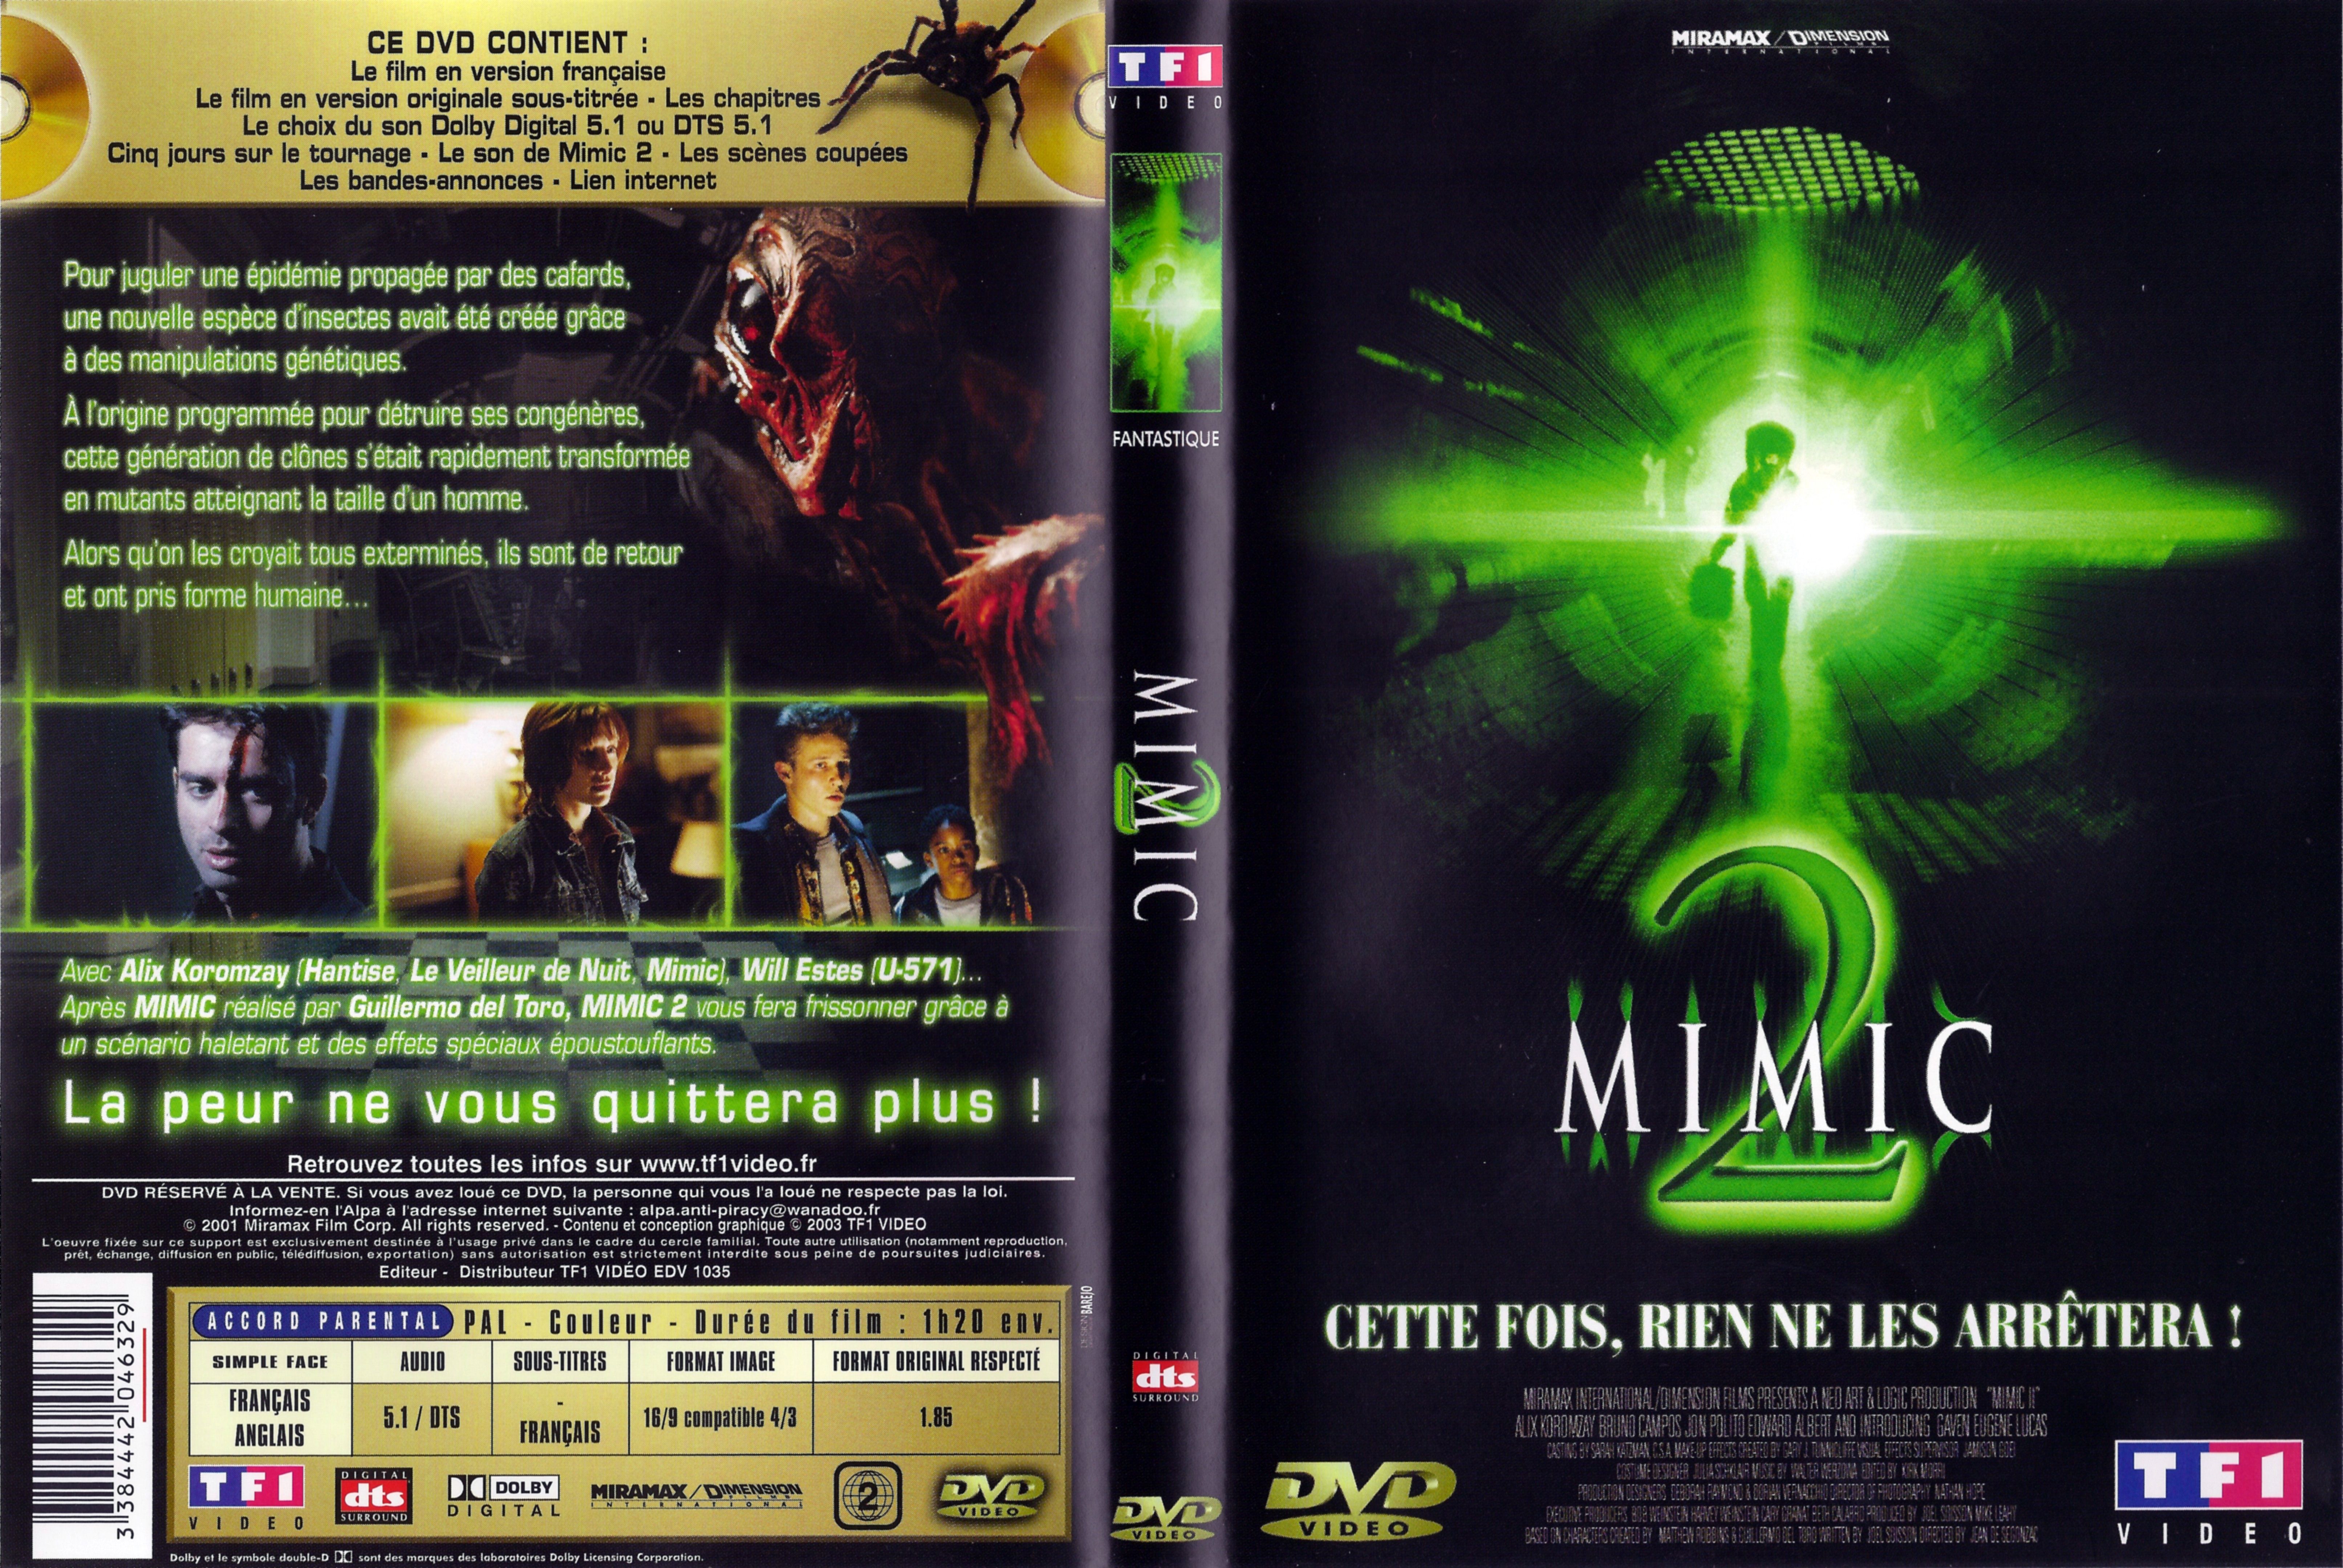 Jaquette DVD Mimic 2